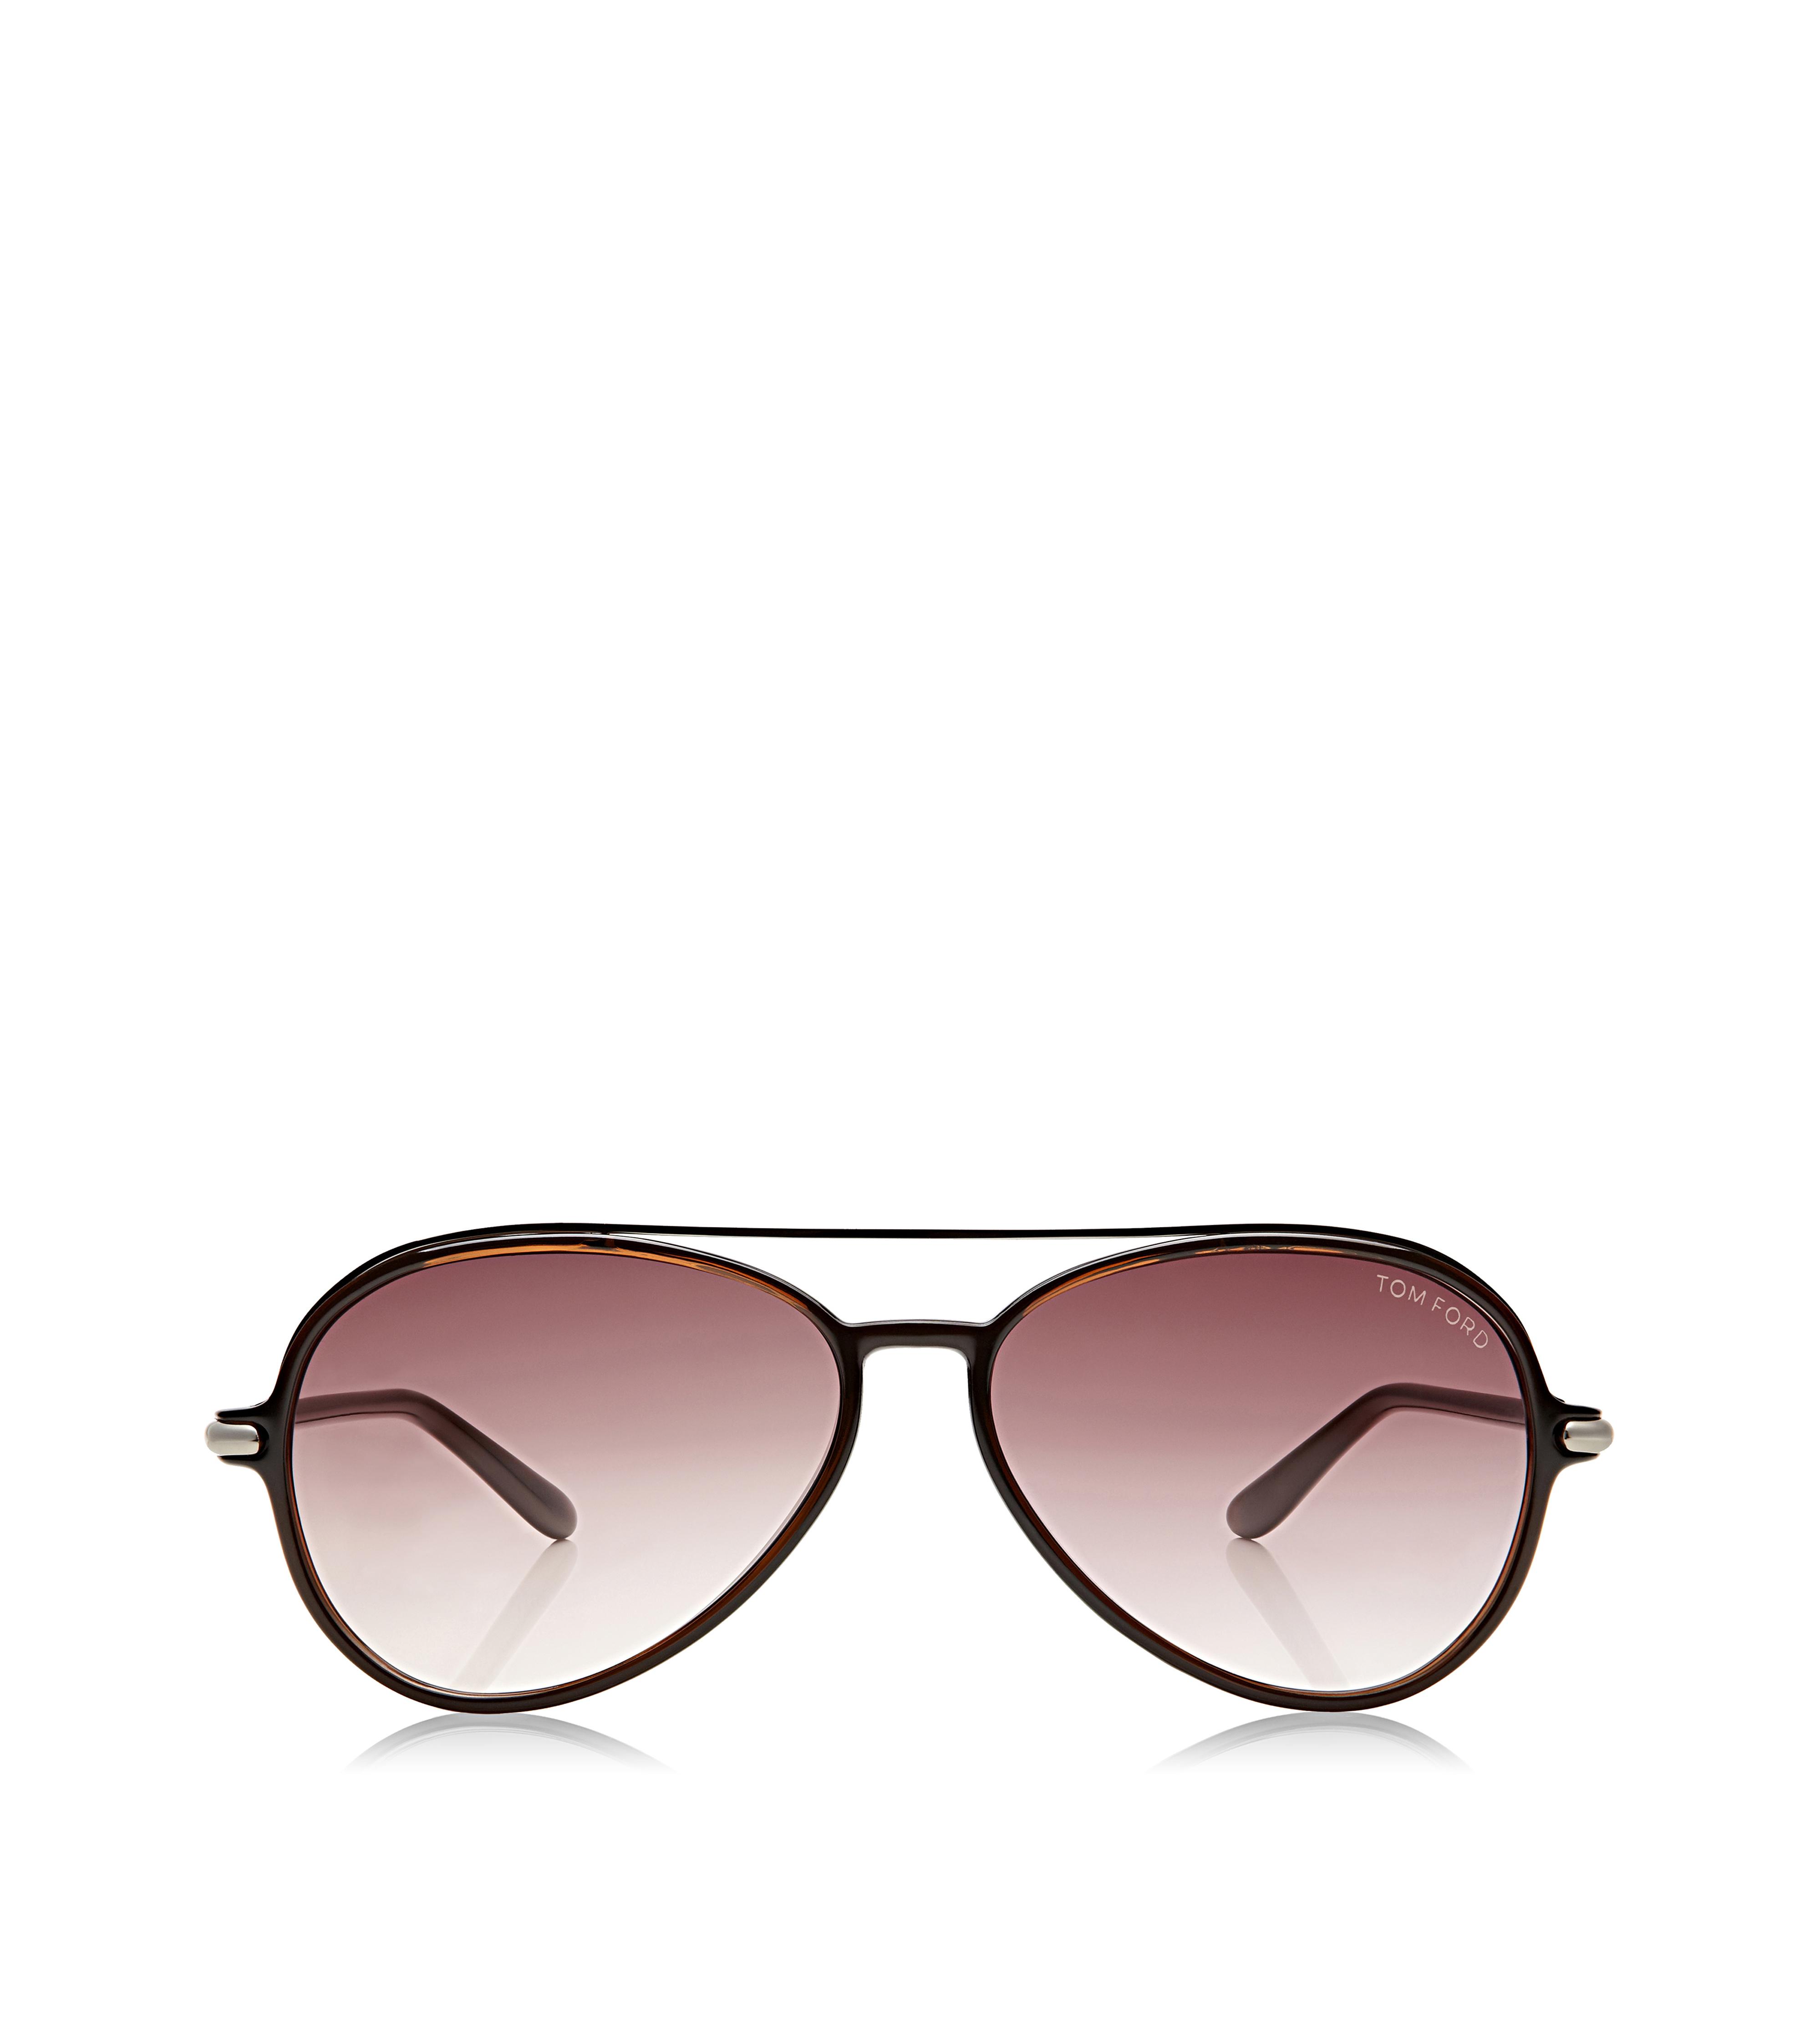 Eyewear - Men's Eyeglasses by TOM FORD- Designer Eyeglasses for Men ...